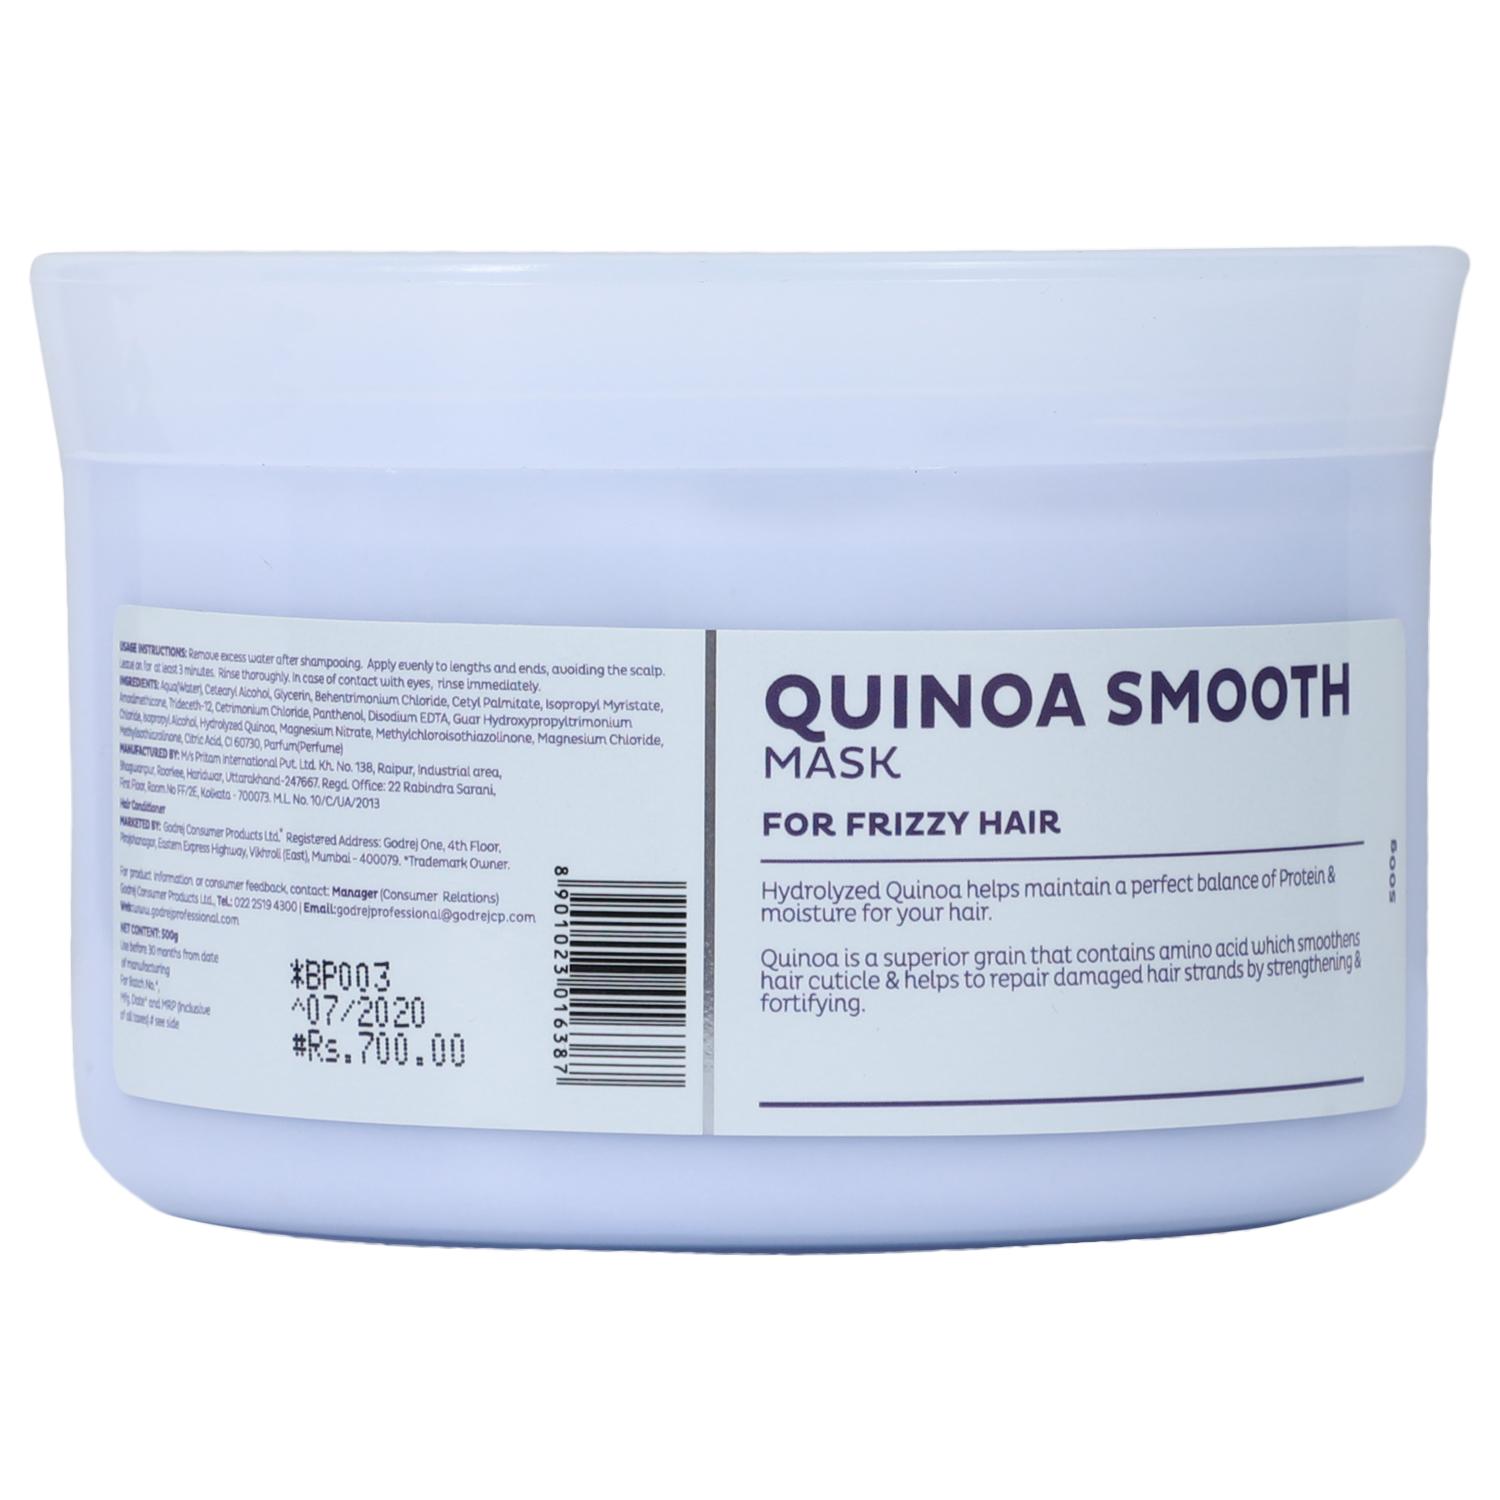 Godrej Professional Quinoa Smooth Mask 500 Gram 